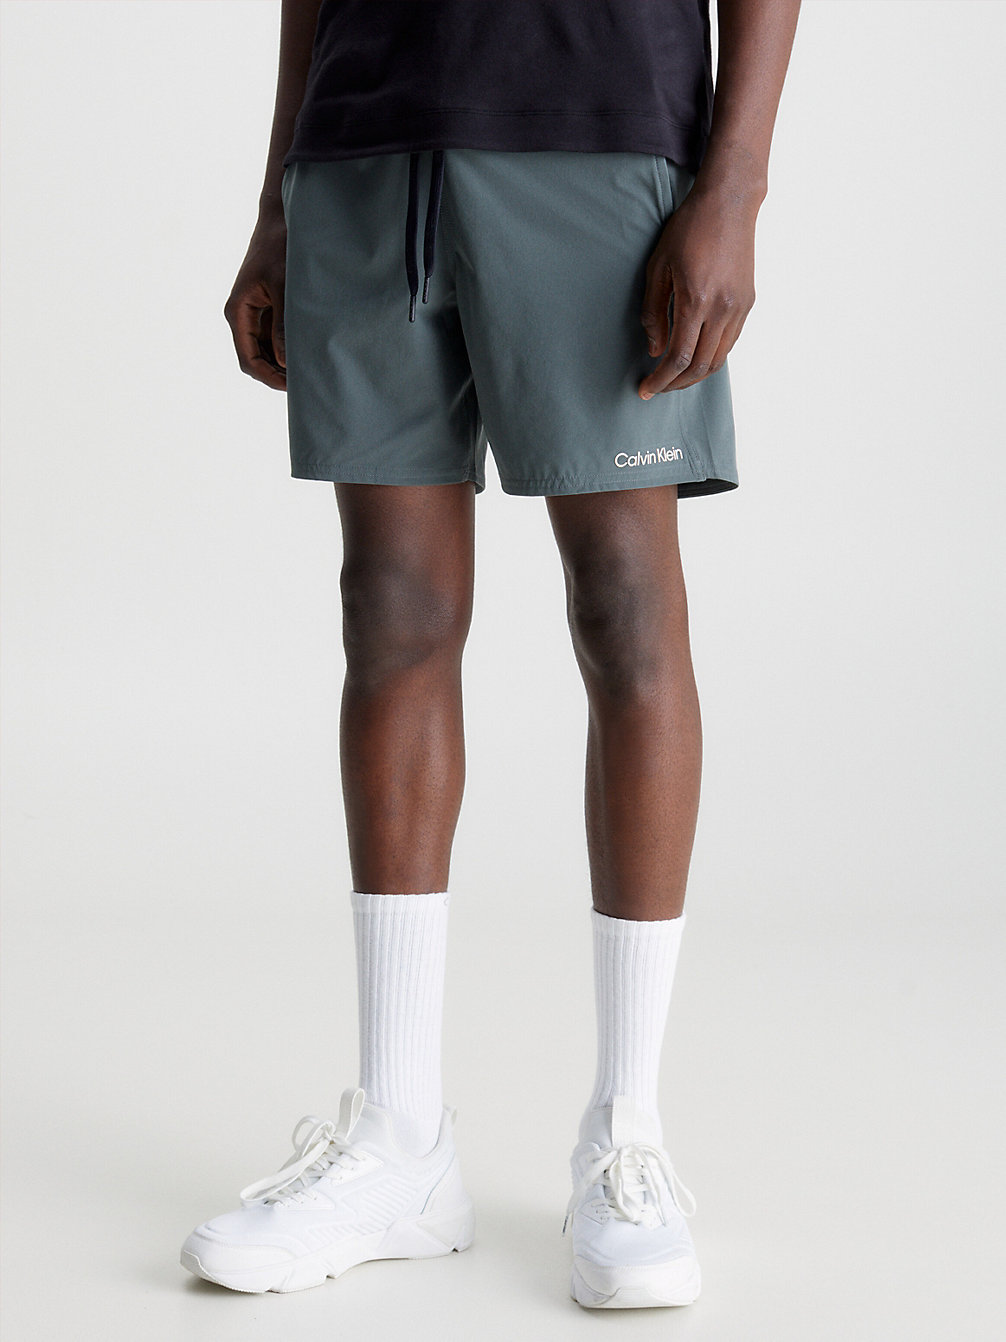 URBAN CHIC Quick-Dry Gym Shorts undefined men Calvin Klein